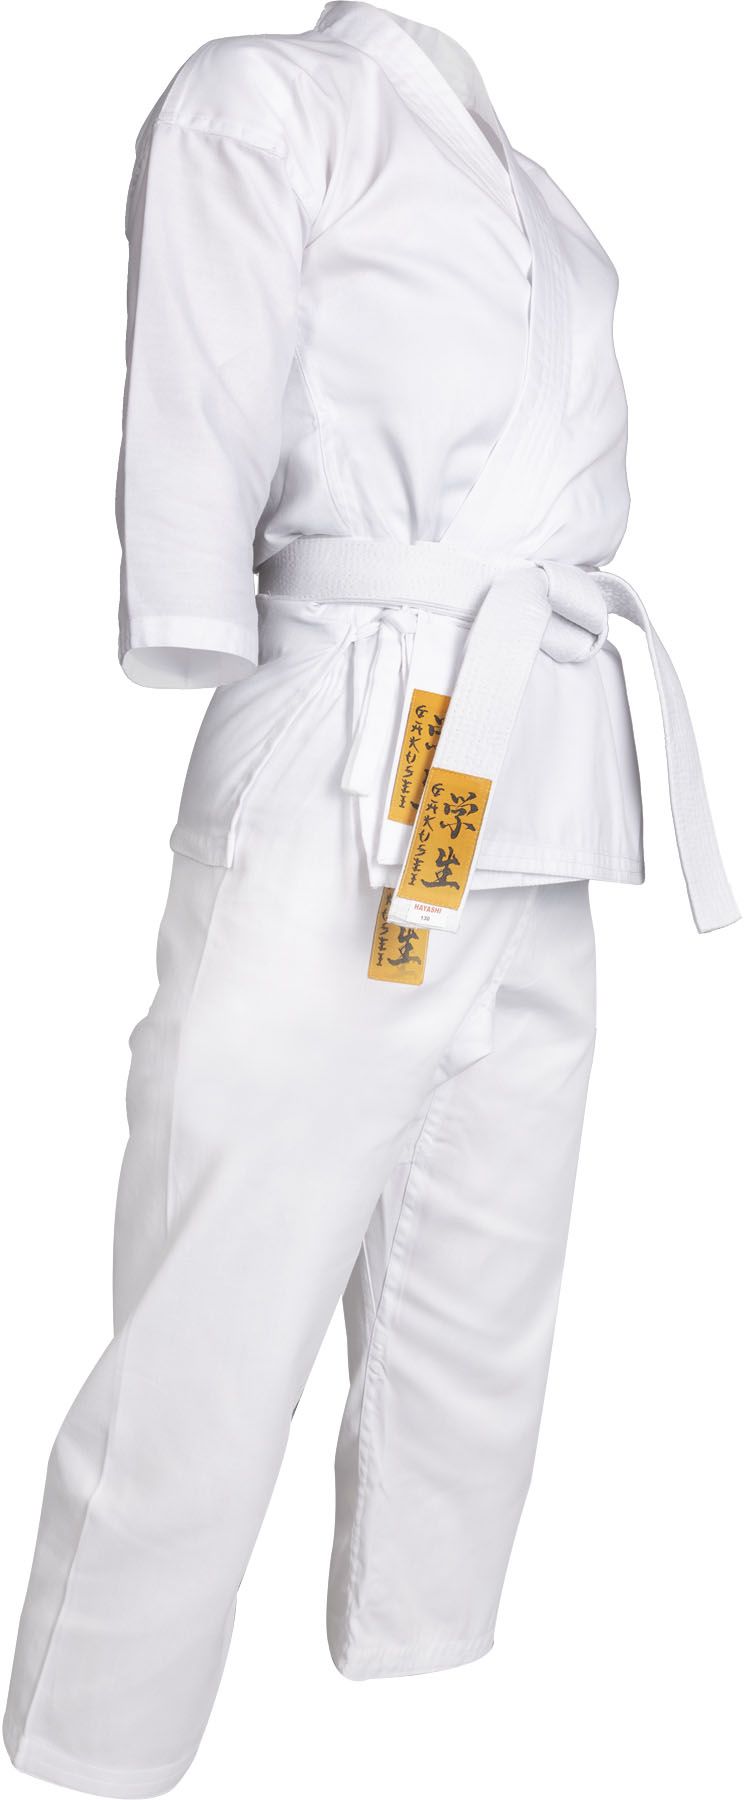 POŠKOZENÉ: Hayashi karate gi Gakusei - bílá